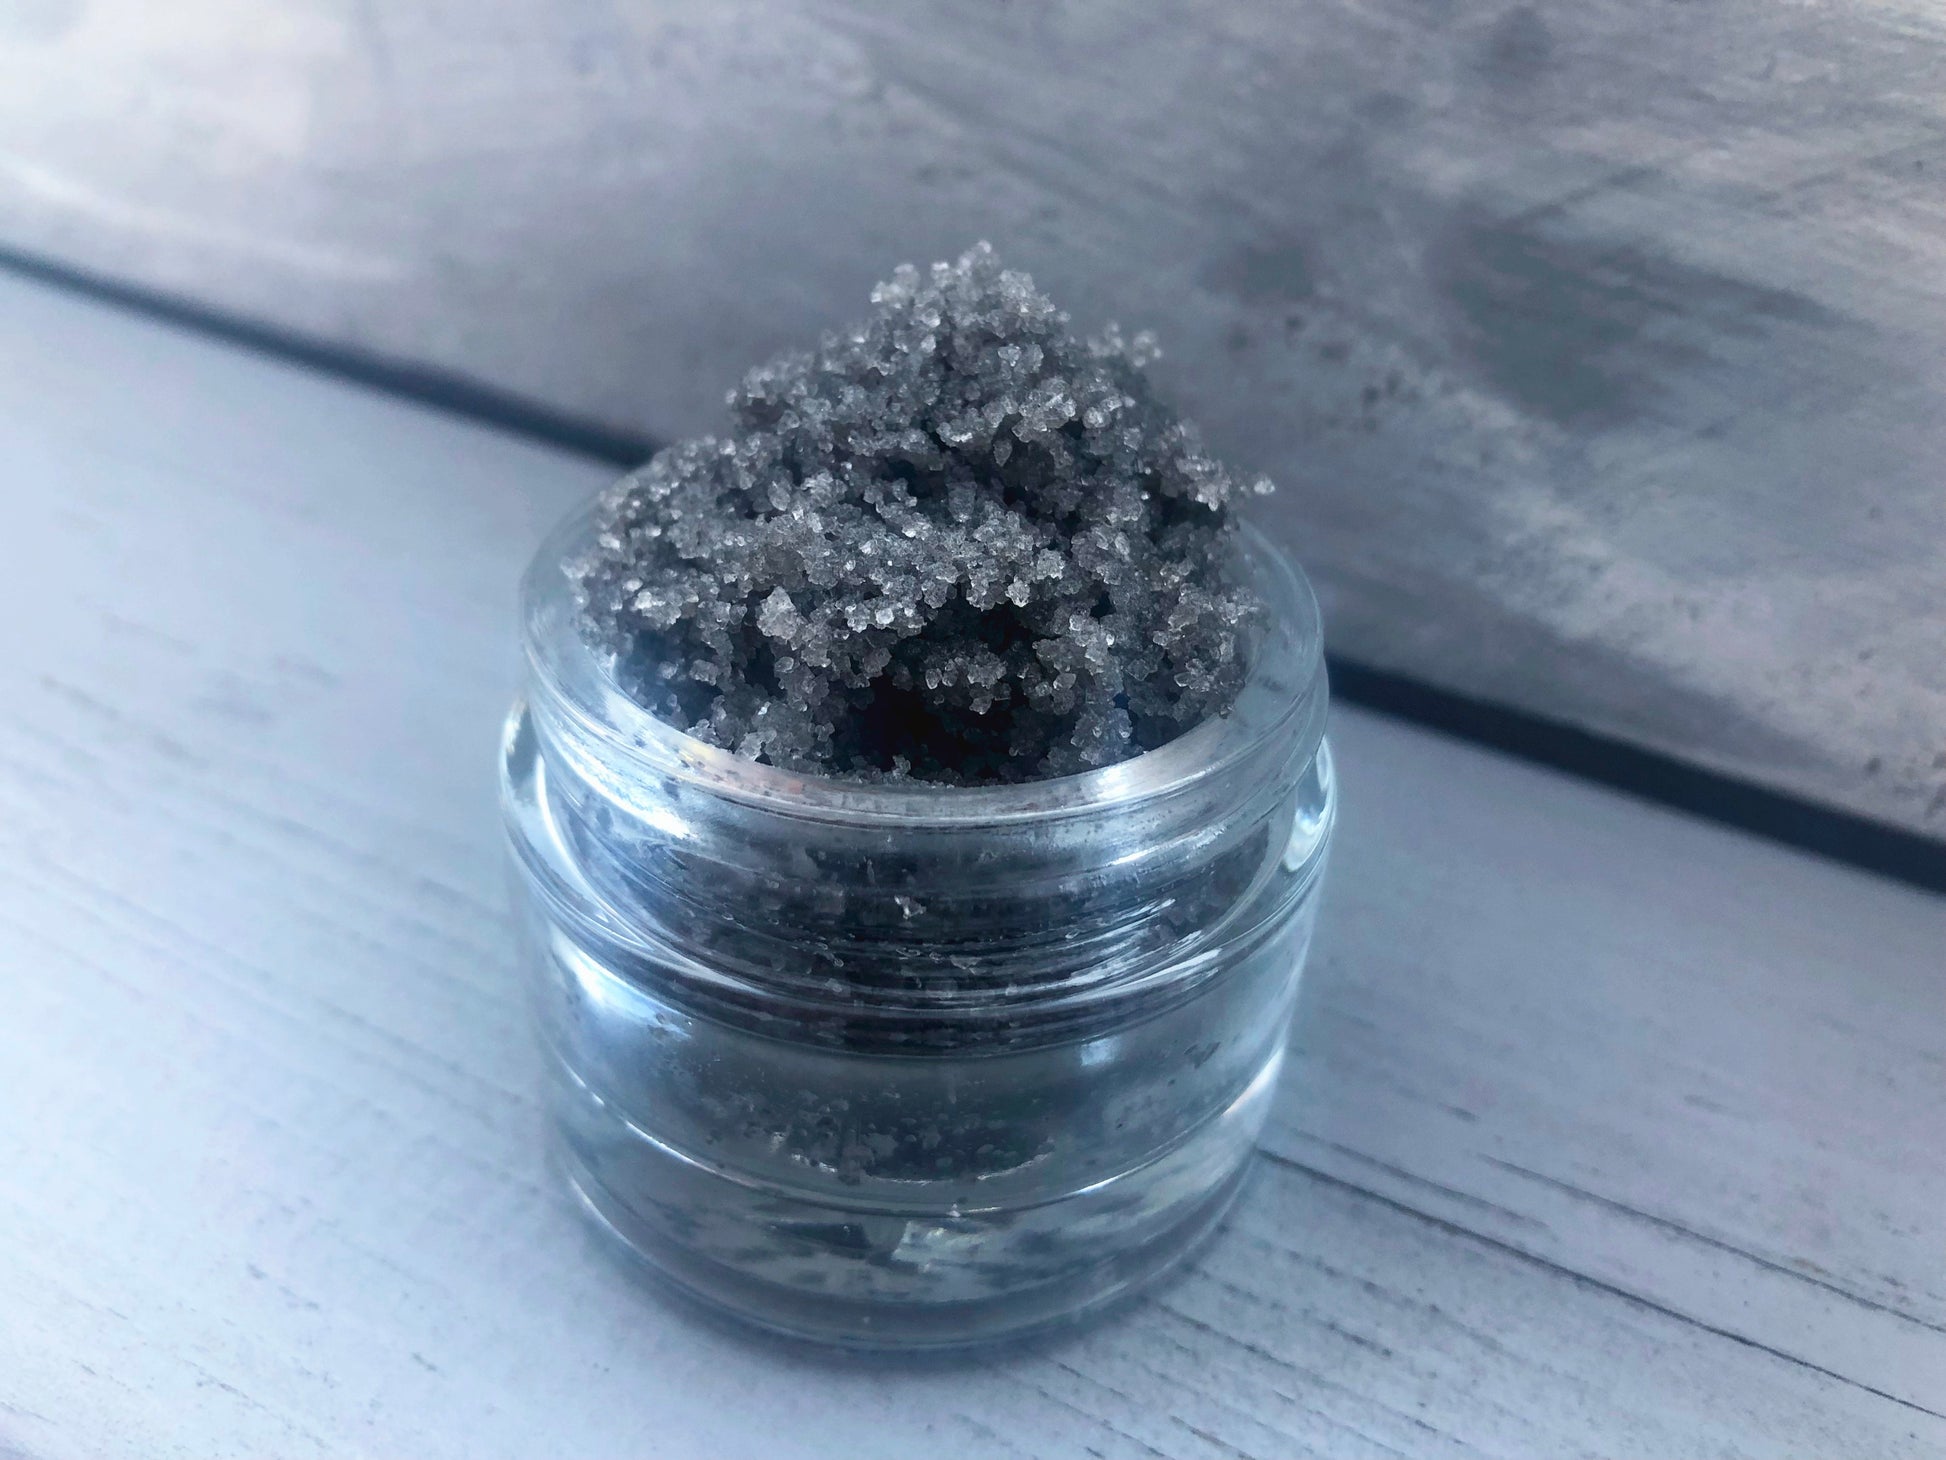 Salted Caramel grey black sugar lip scrub used for exfoliating in a glass jar